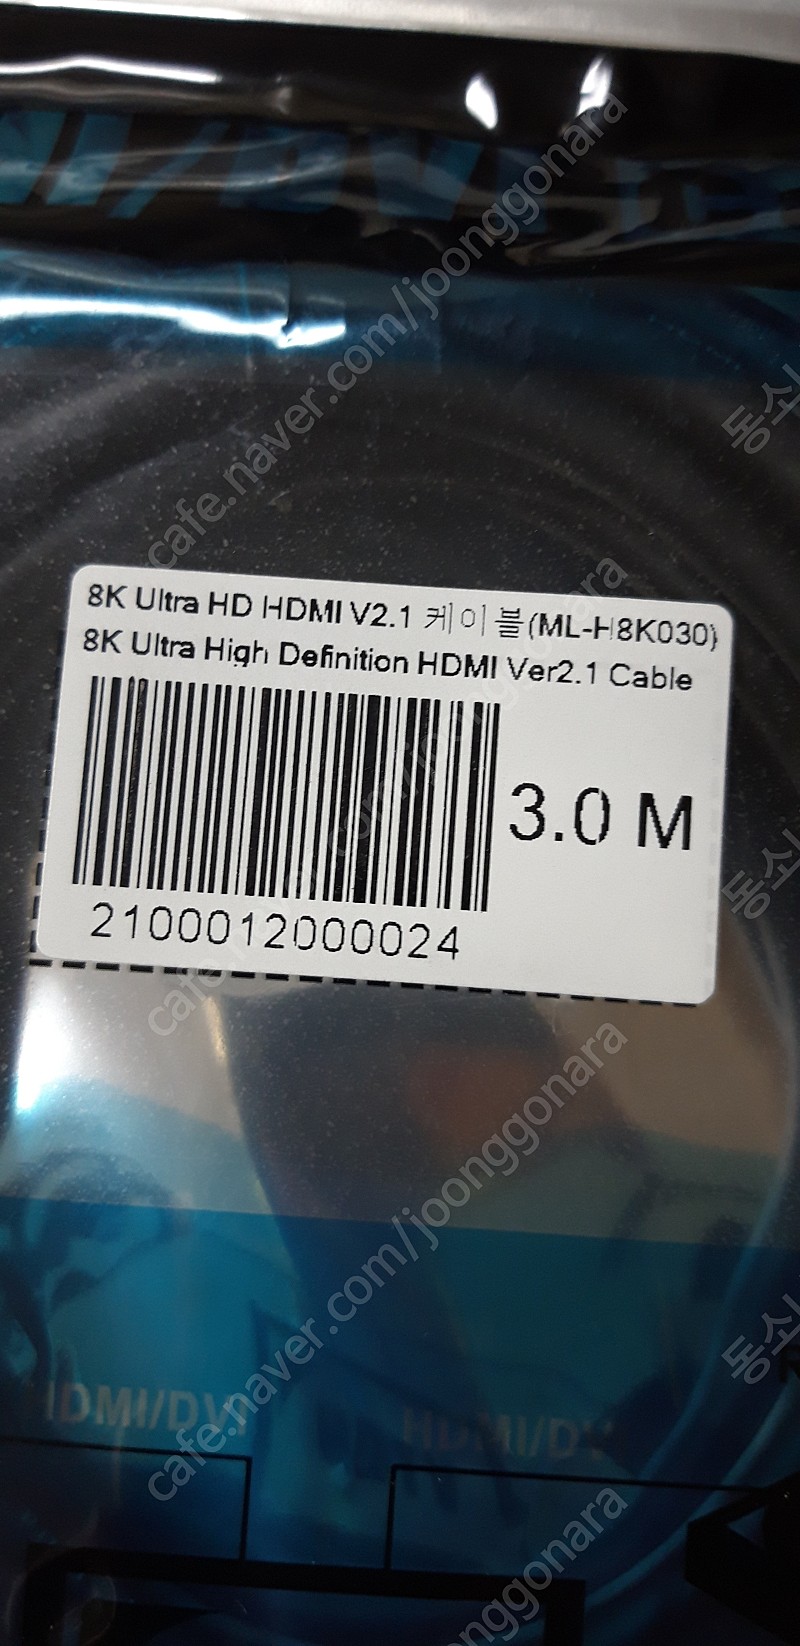 Ultra HDMI 2.1V 8K 케이블 ML-H8K030 (3.0M)